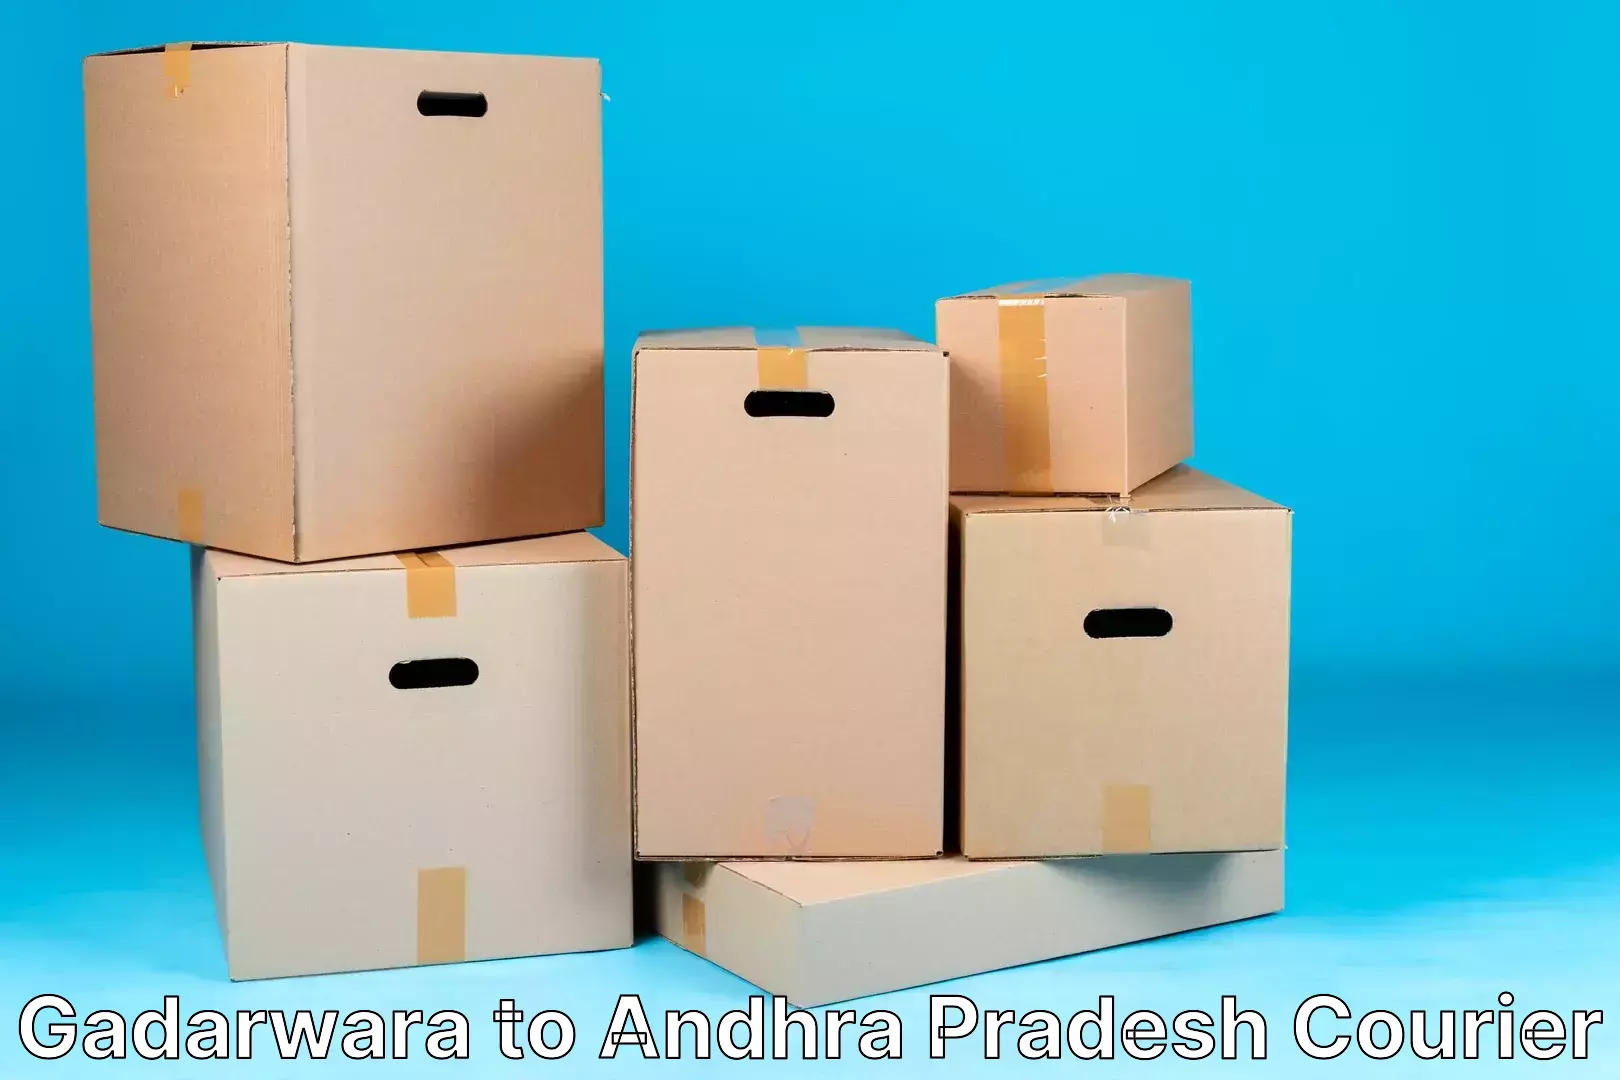 Express mail service Gadarwara to Andhra Pradesh